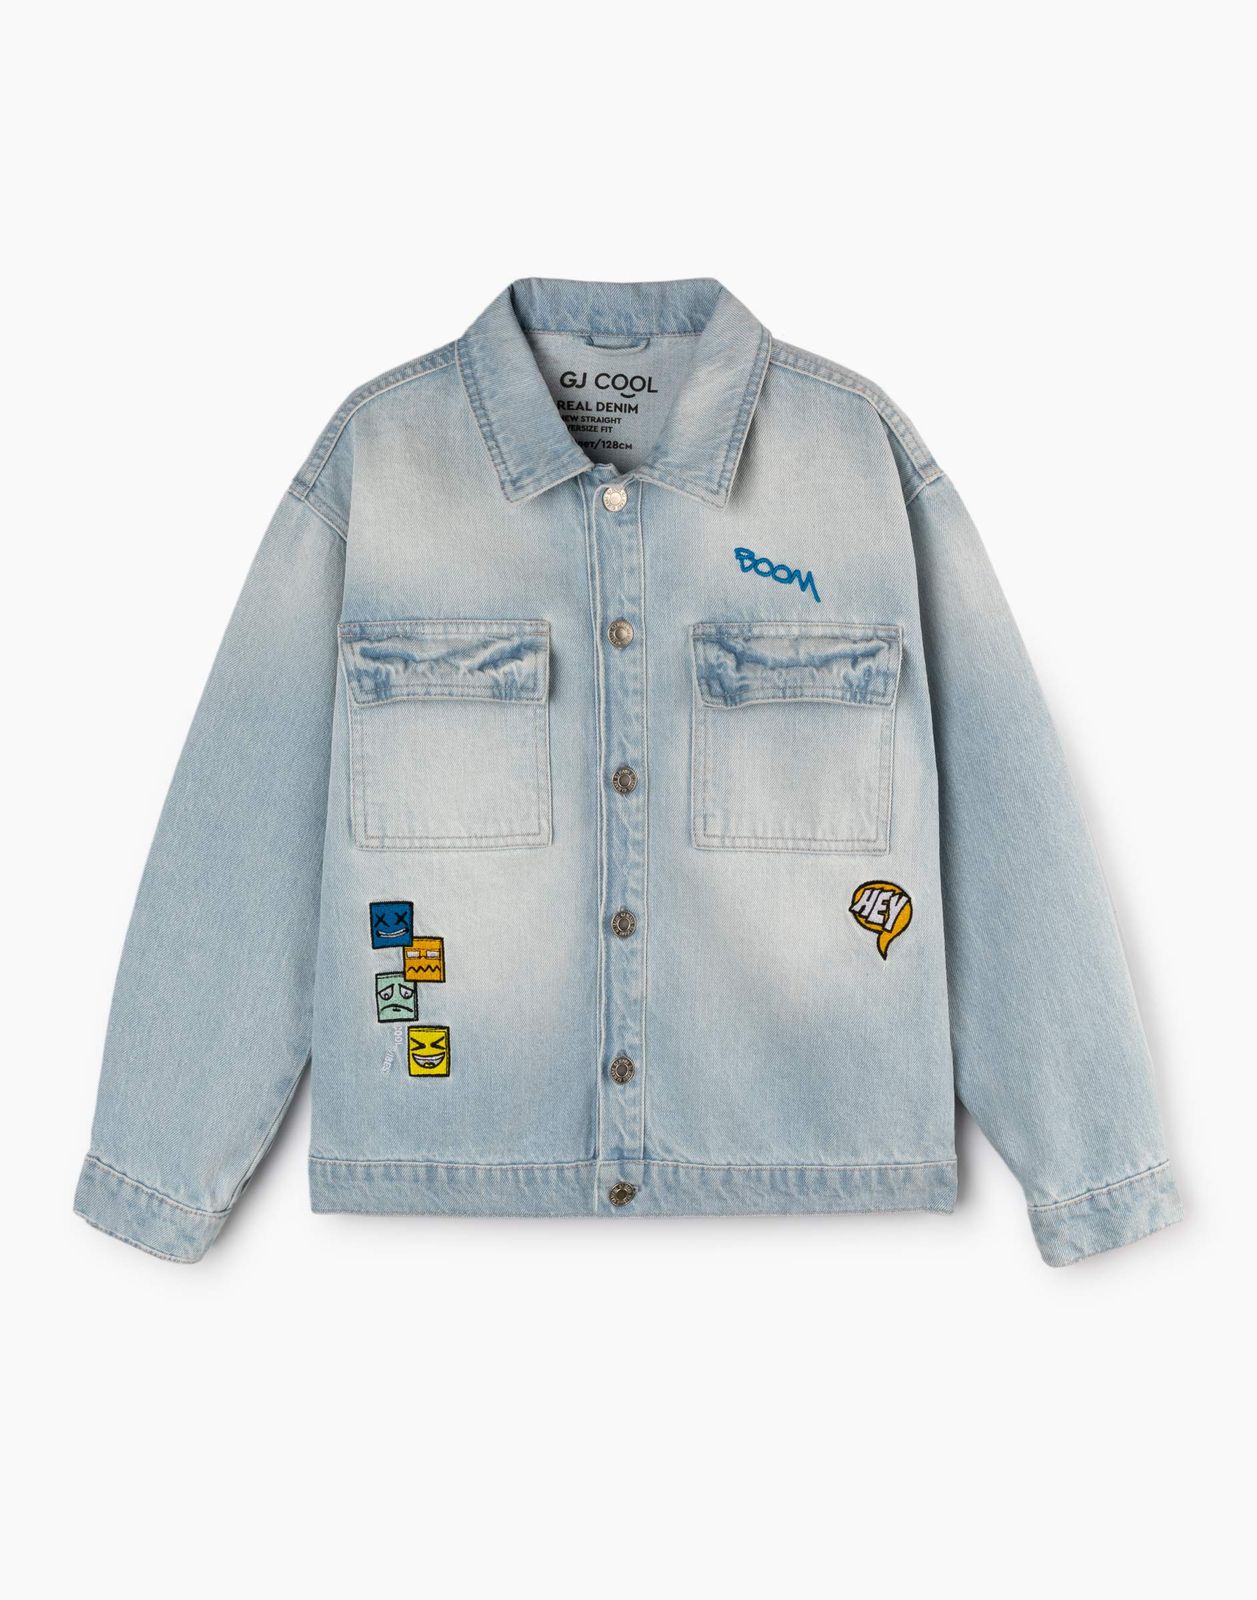 Джинсовый жакет (куртка) для мальчика Gloria Jeans BJC002603 синий /медиум-лайт/ 6-8л/128